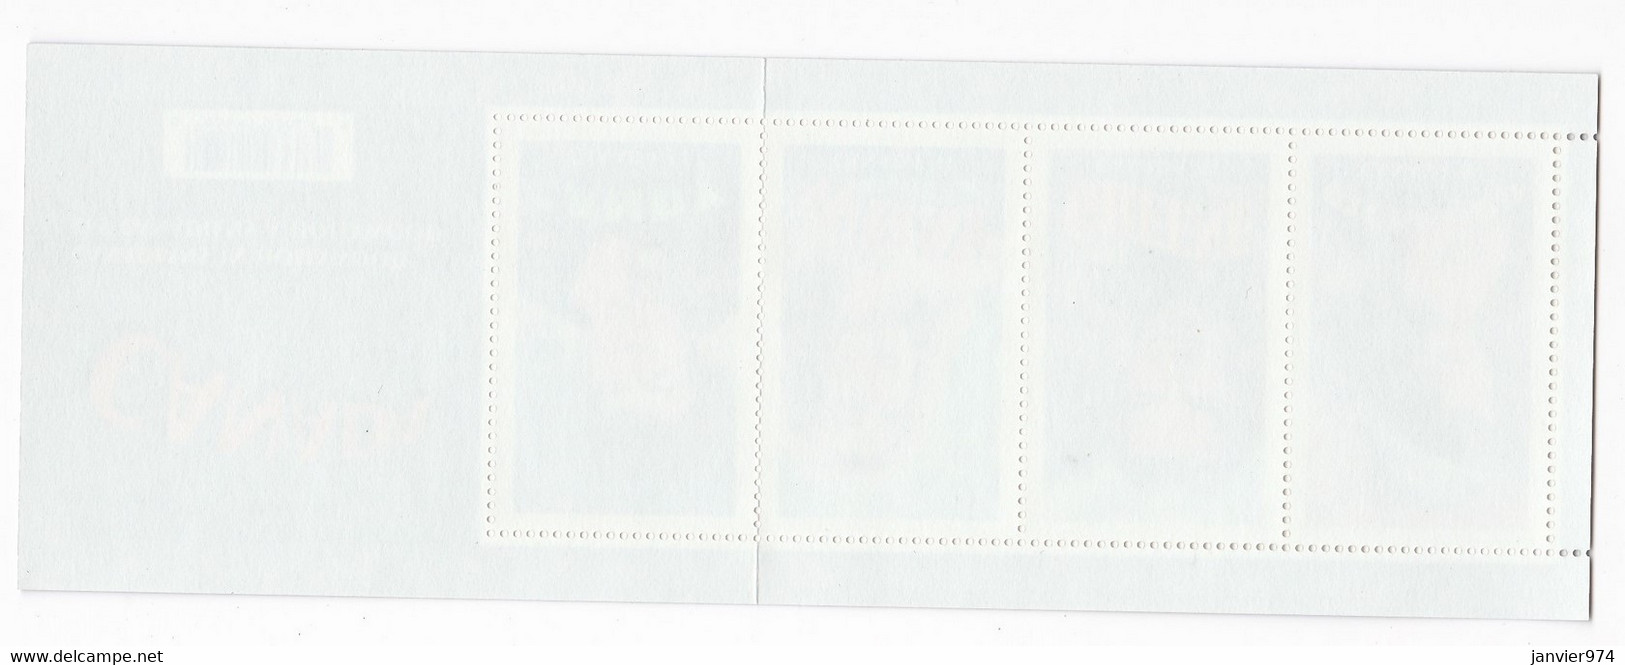 Canada ,  plusieurs Blocs , soit au total 86 timbres neufs , Voir 20 scan recto verso.